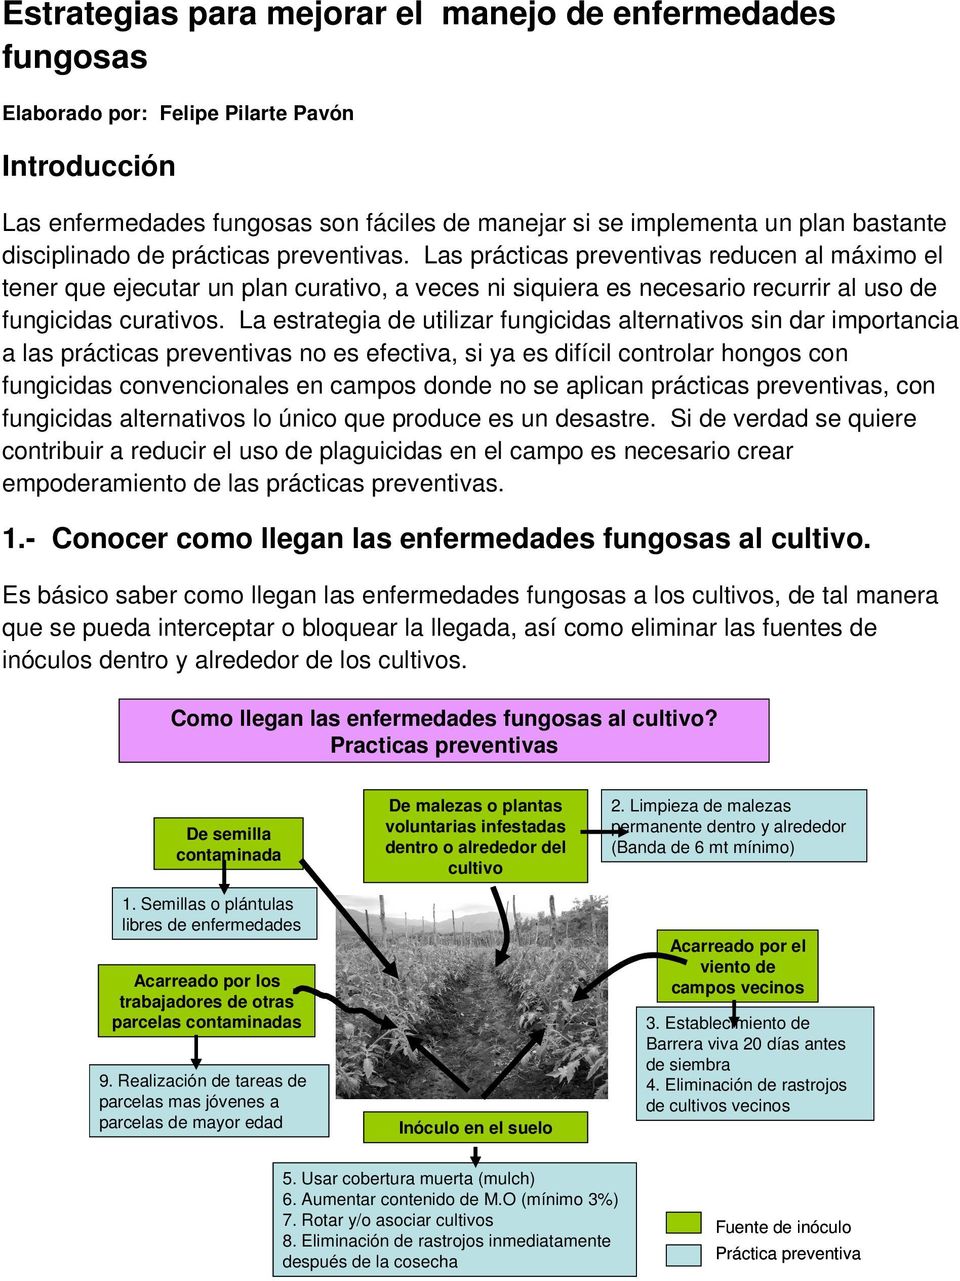 La estrategia de utilizar fungicidas alternativos sin dar importancia a las prácticas preventivas no es efectiva, si ya es difícil controlar hongos con fungicidas convencionales en campos donde no se